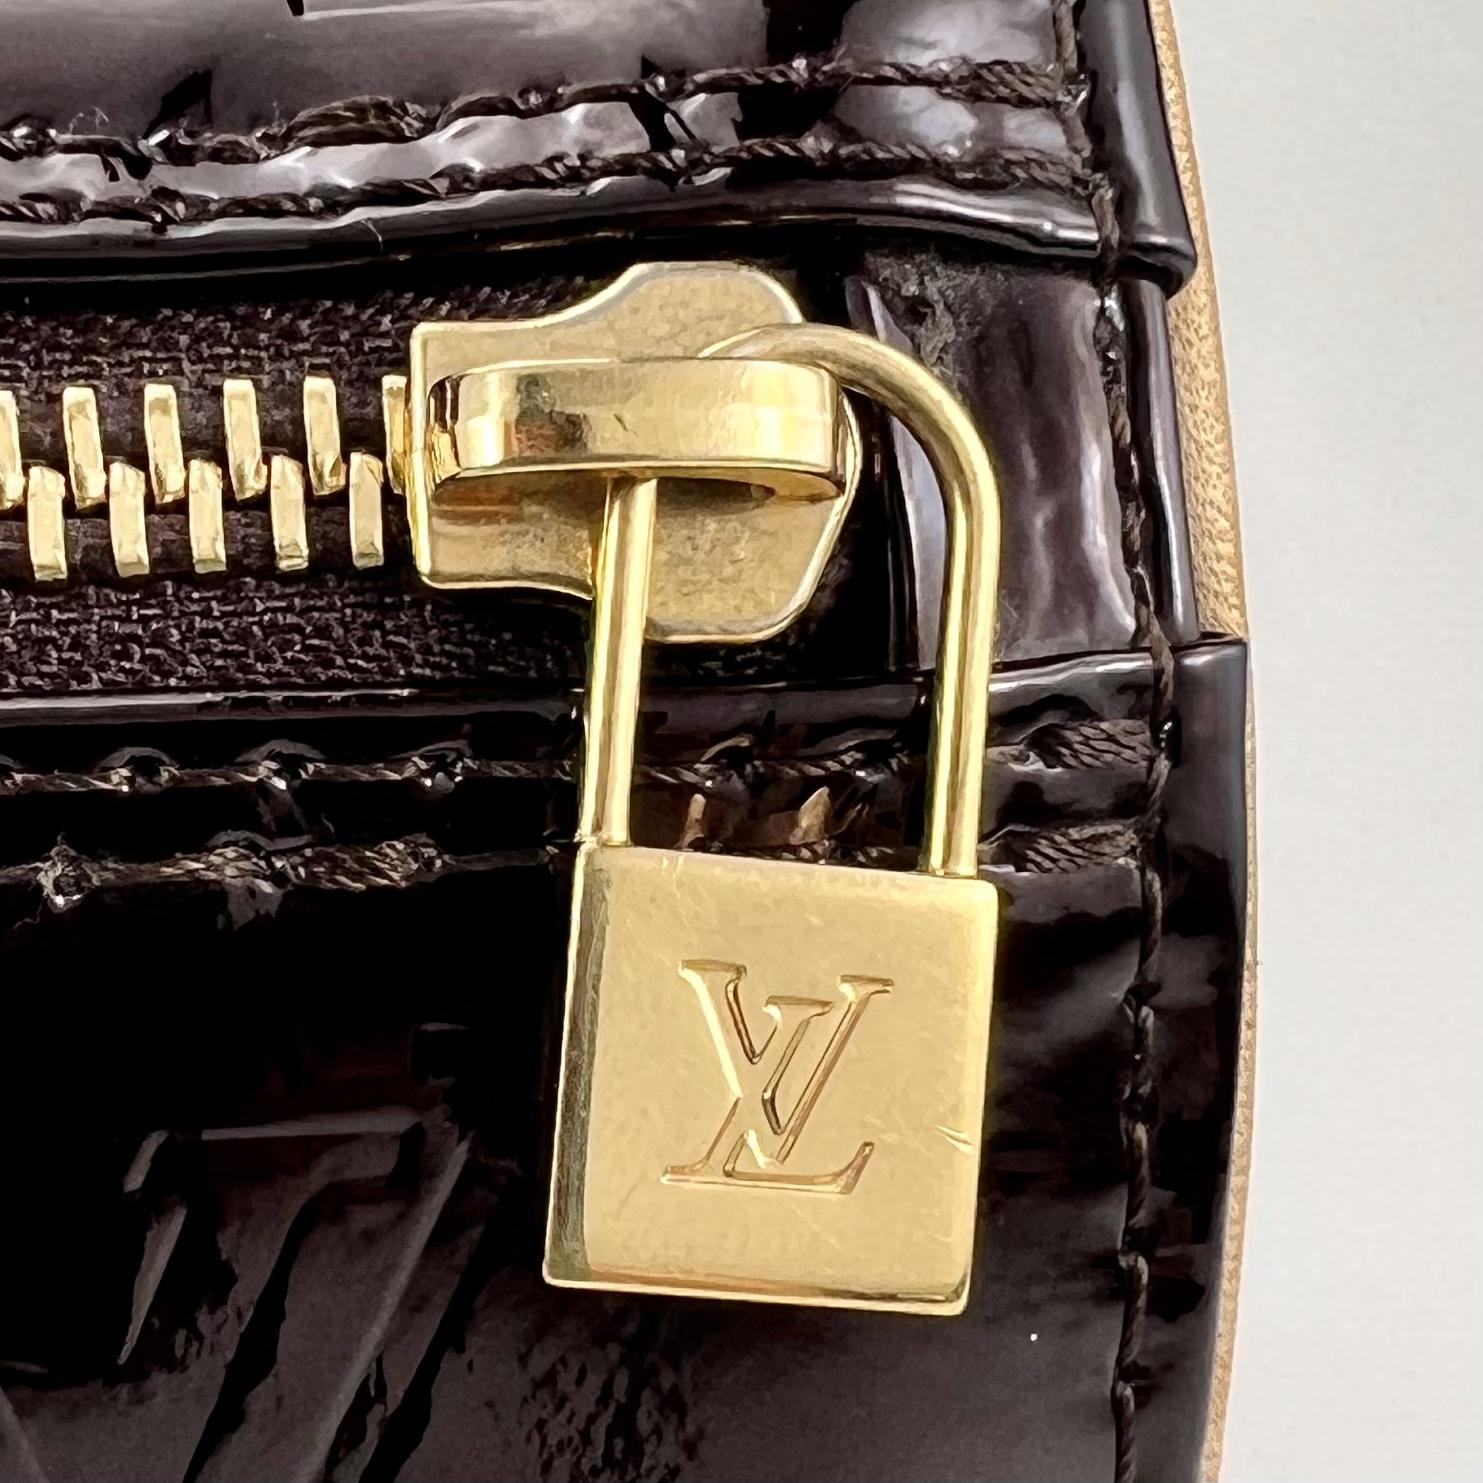 AUTHENTIC LOUIS VUITTON BEDFORD VERNIS – Esys Handbags Boutique